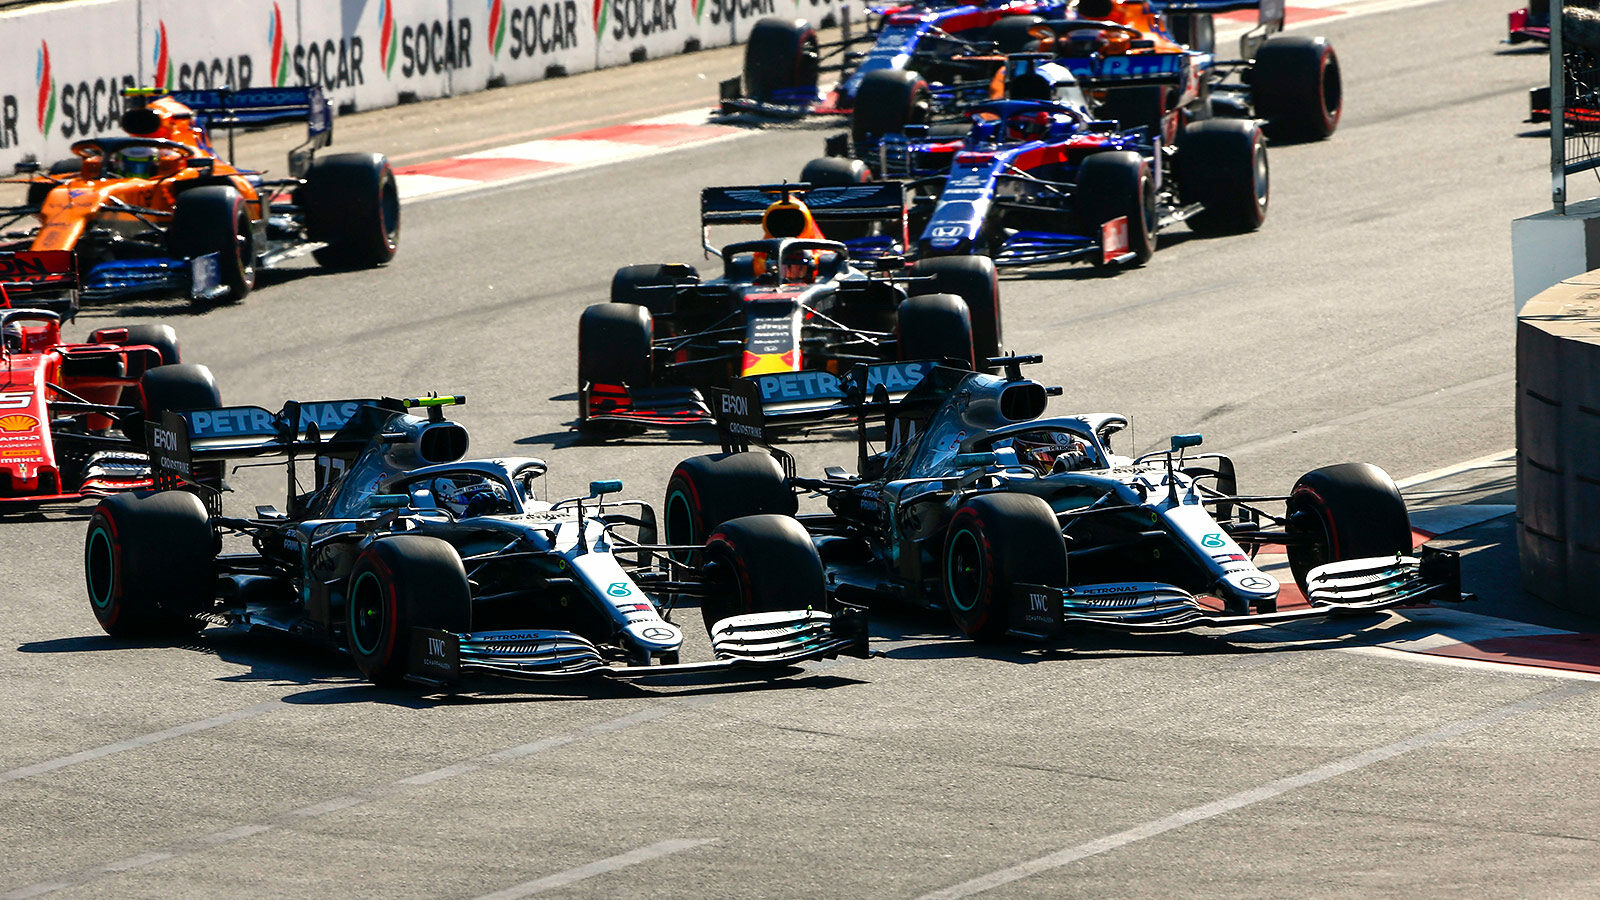 Formel-1: Mercedes dominiert auch in Aserbaidschan